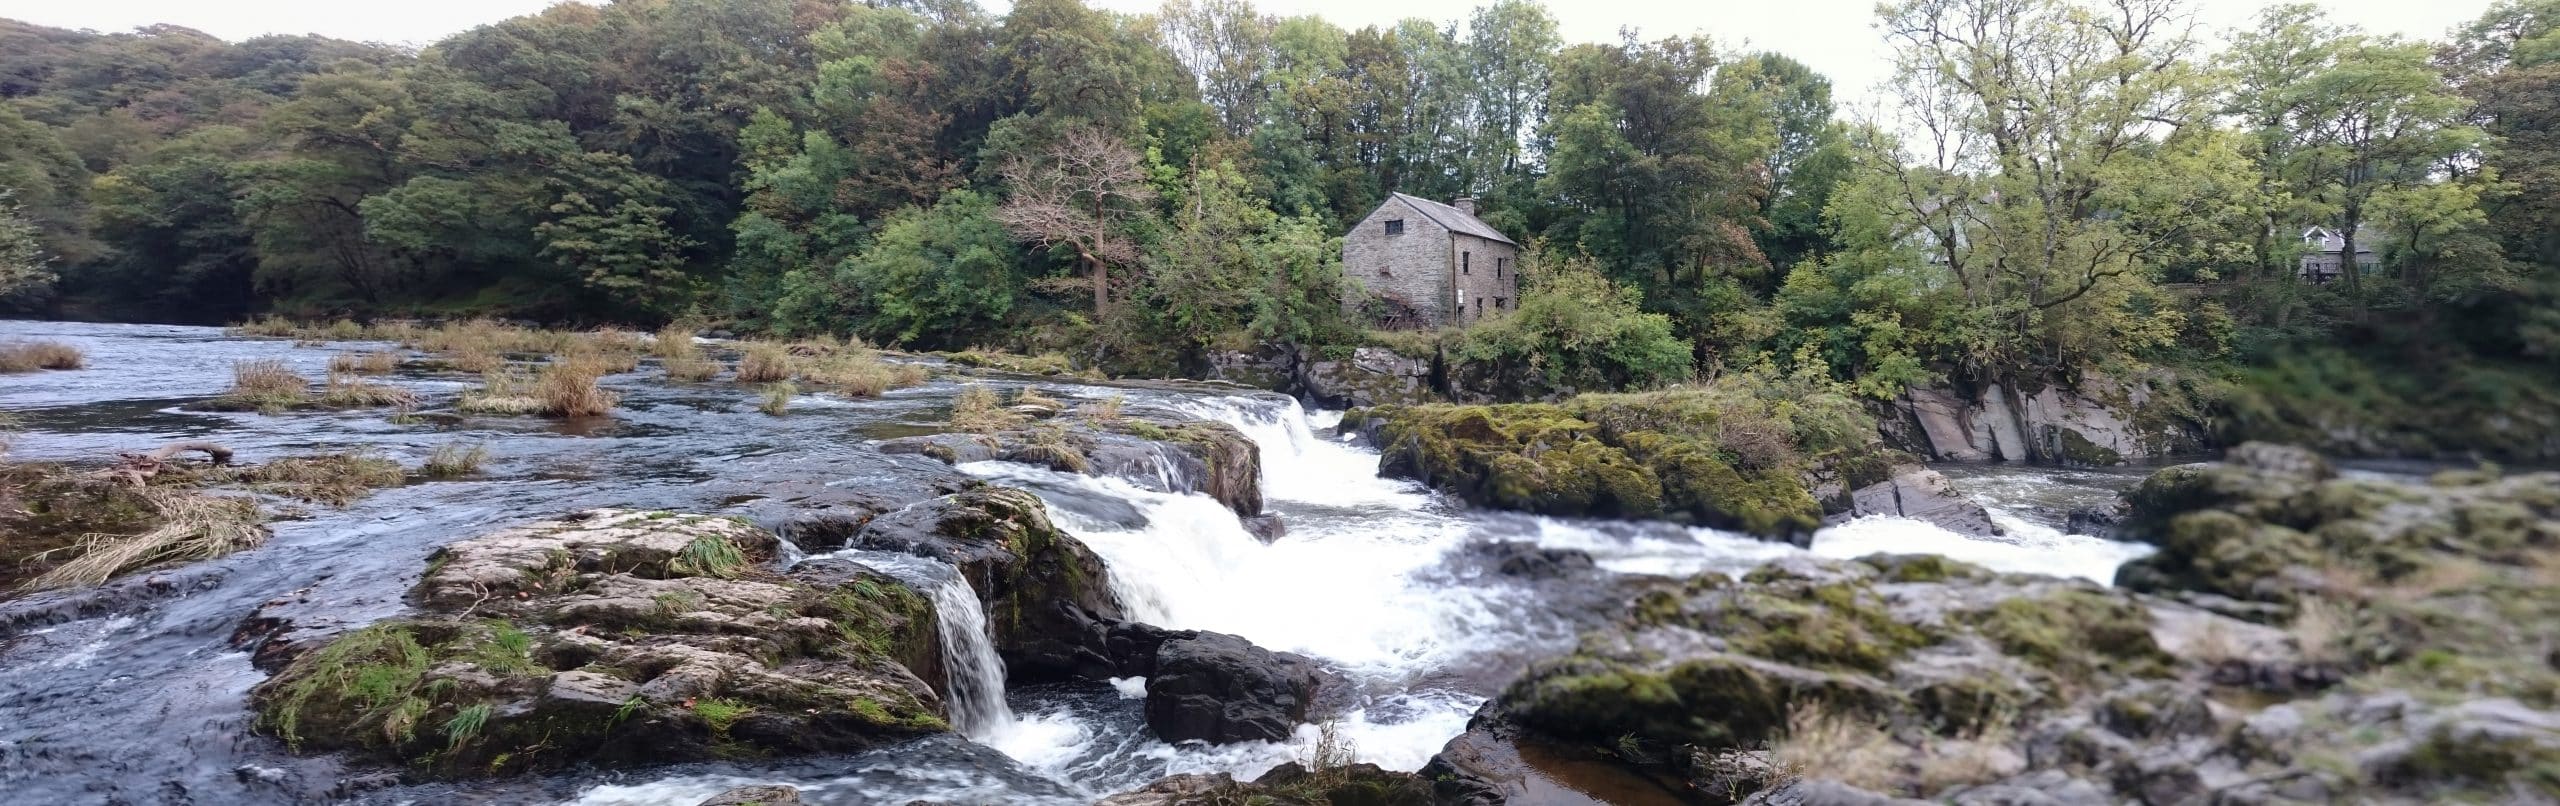 The Mill at Cenarth Falls